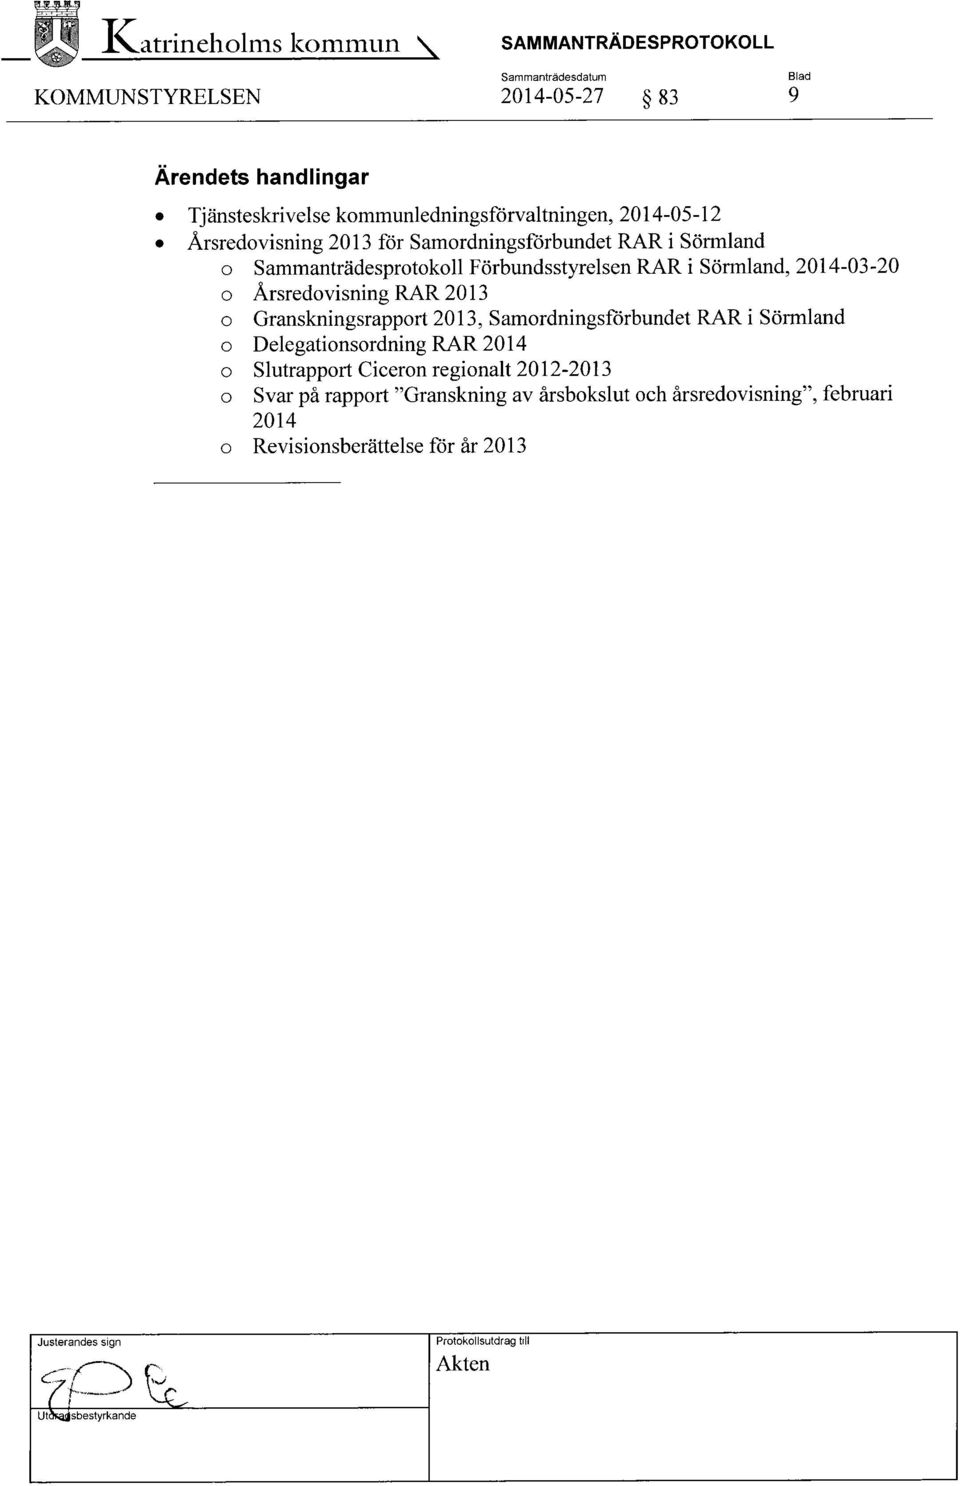 Årsredovisning RAR 2013 o Granskningsrapport 2013, Samordningsförbundet RAR i Sörmland o Delegationsordning RAR 2014 o Slutrapport Ciceron